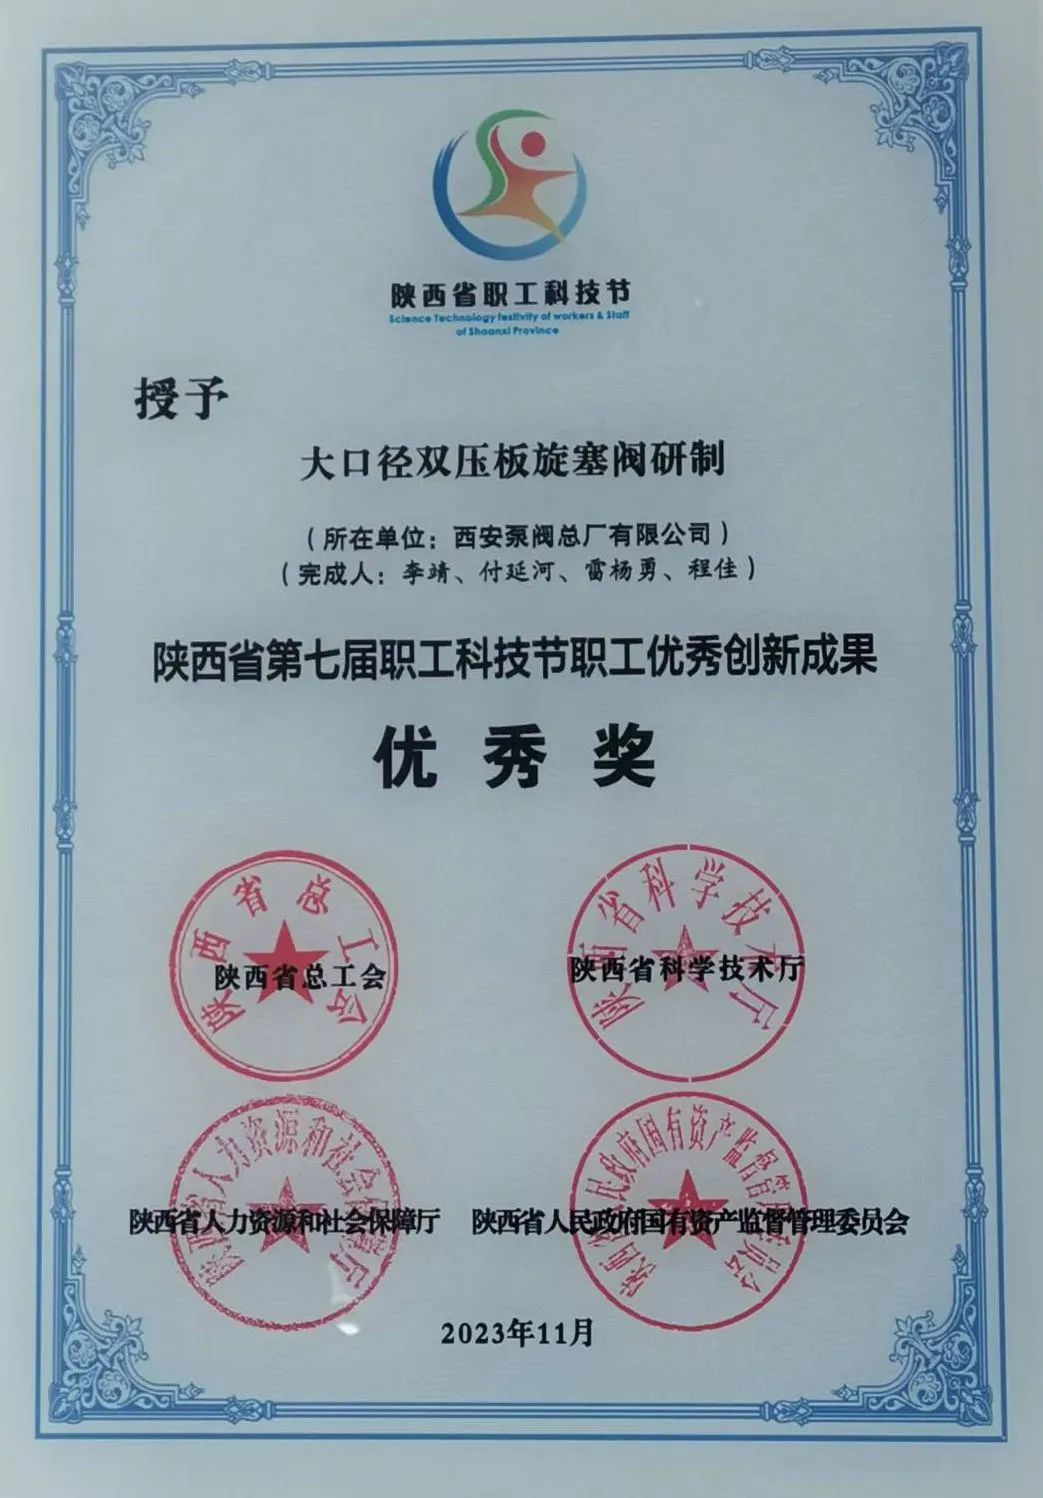 Хорошие новости │ Научно-технический проект компании получил награду за достижения в области экономических инноваций в провинции Шэньси